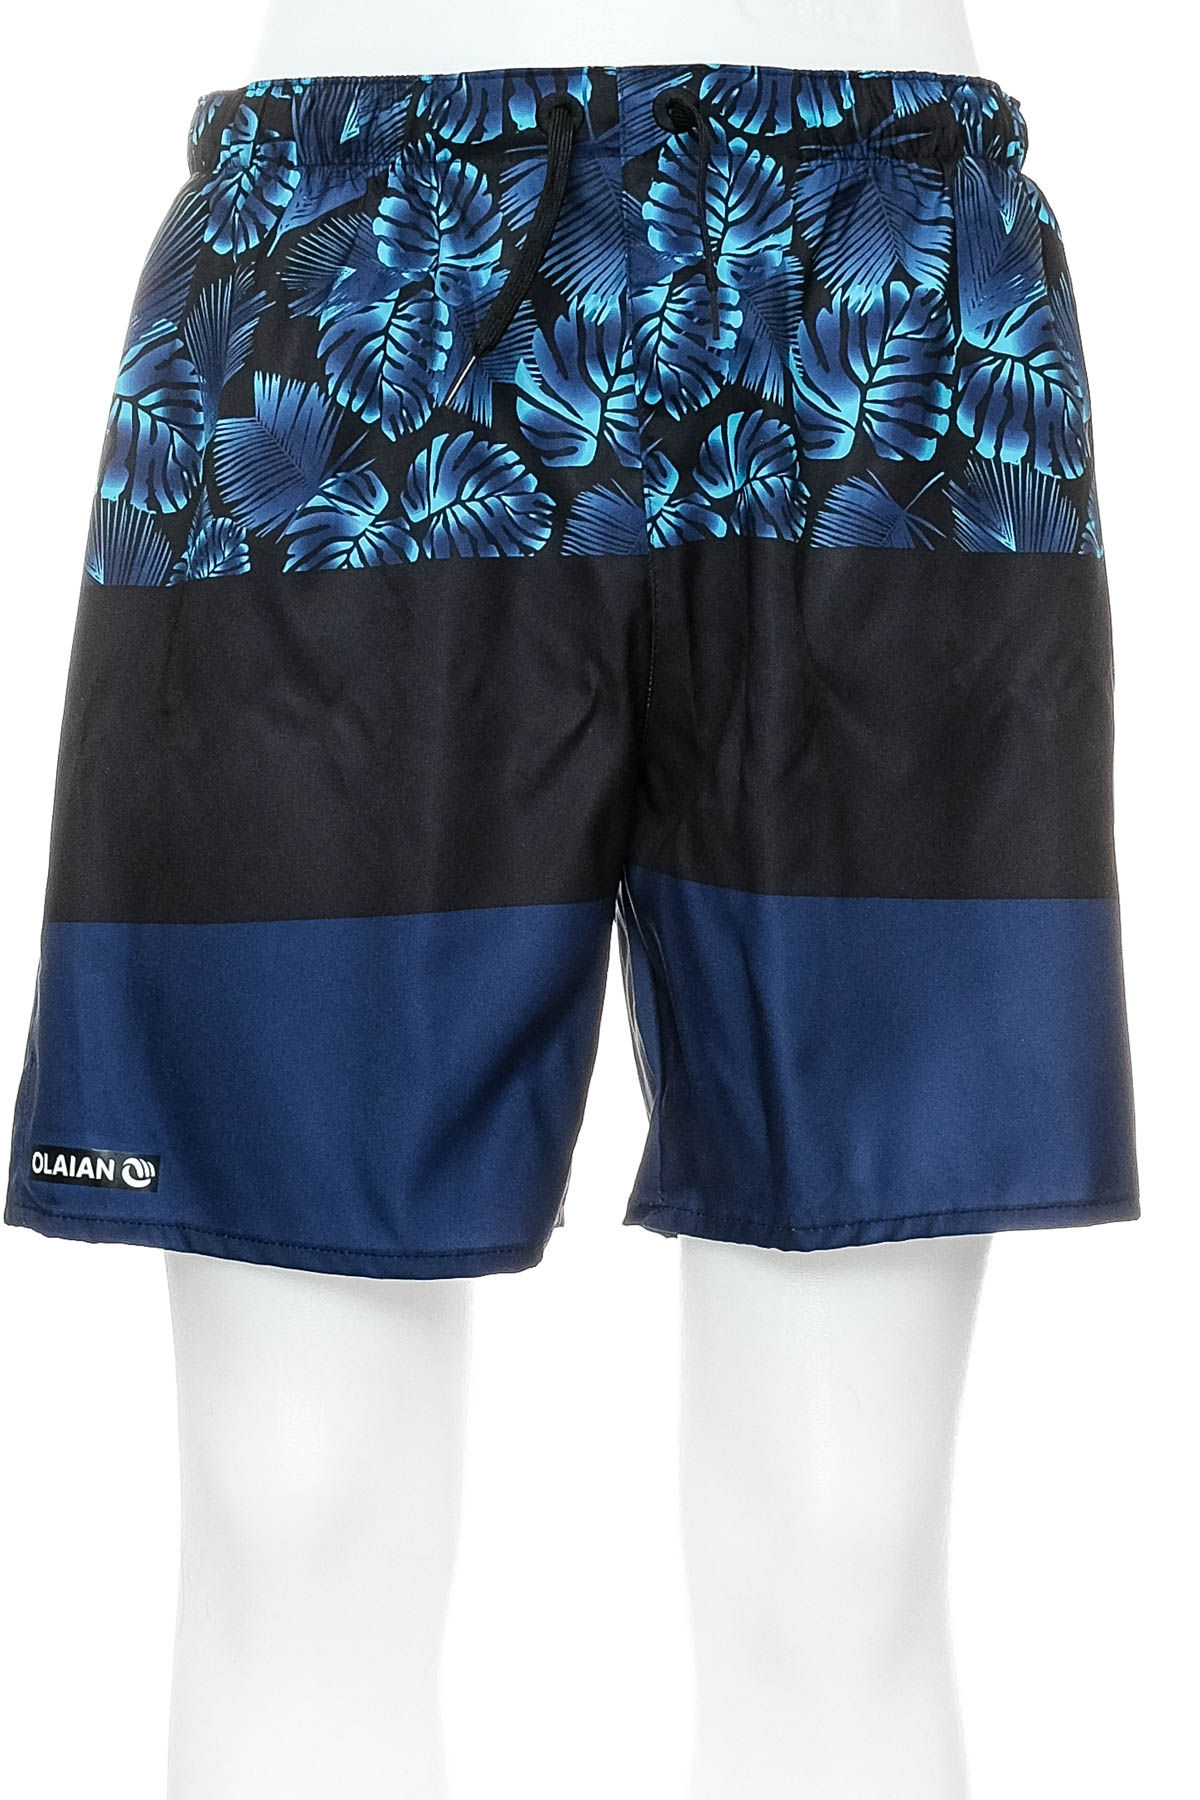 Men's shorts - OLAIAN - 0